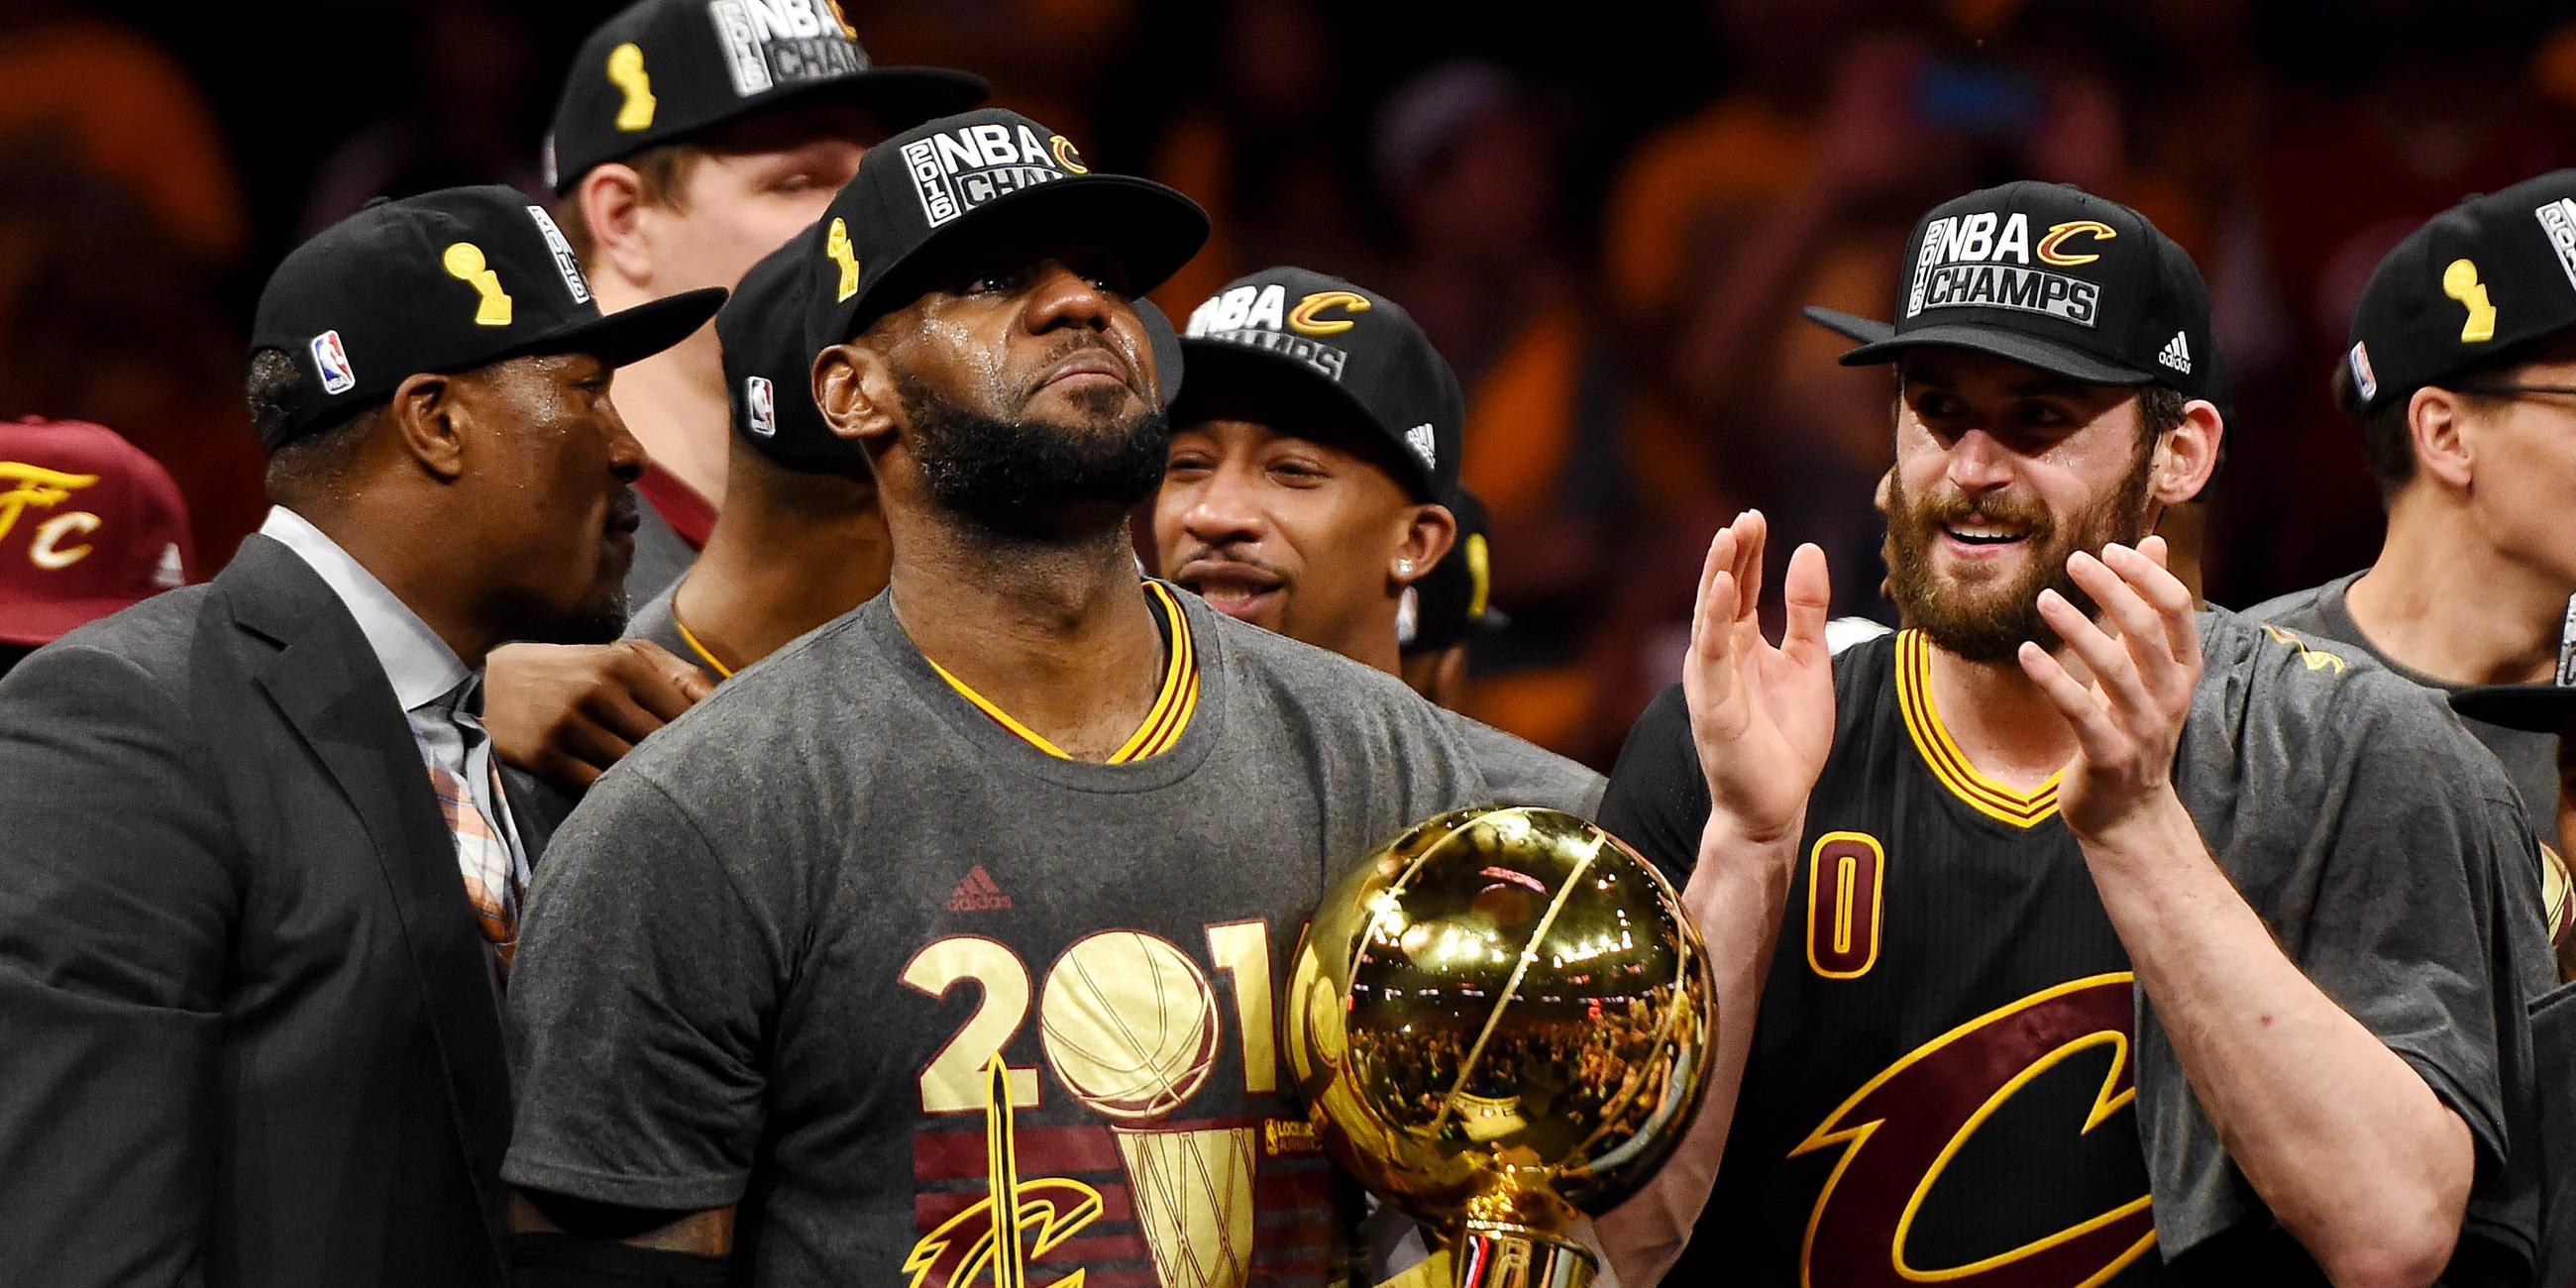 Emotional: LeBron James gewinnt seinen ersten Titel nach der Rückkehr zu den Cleveland Cavaliers